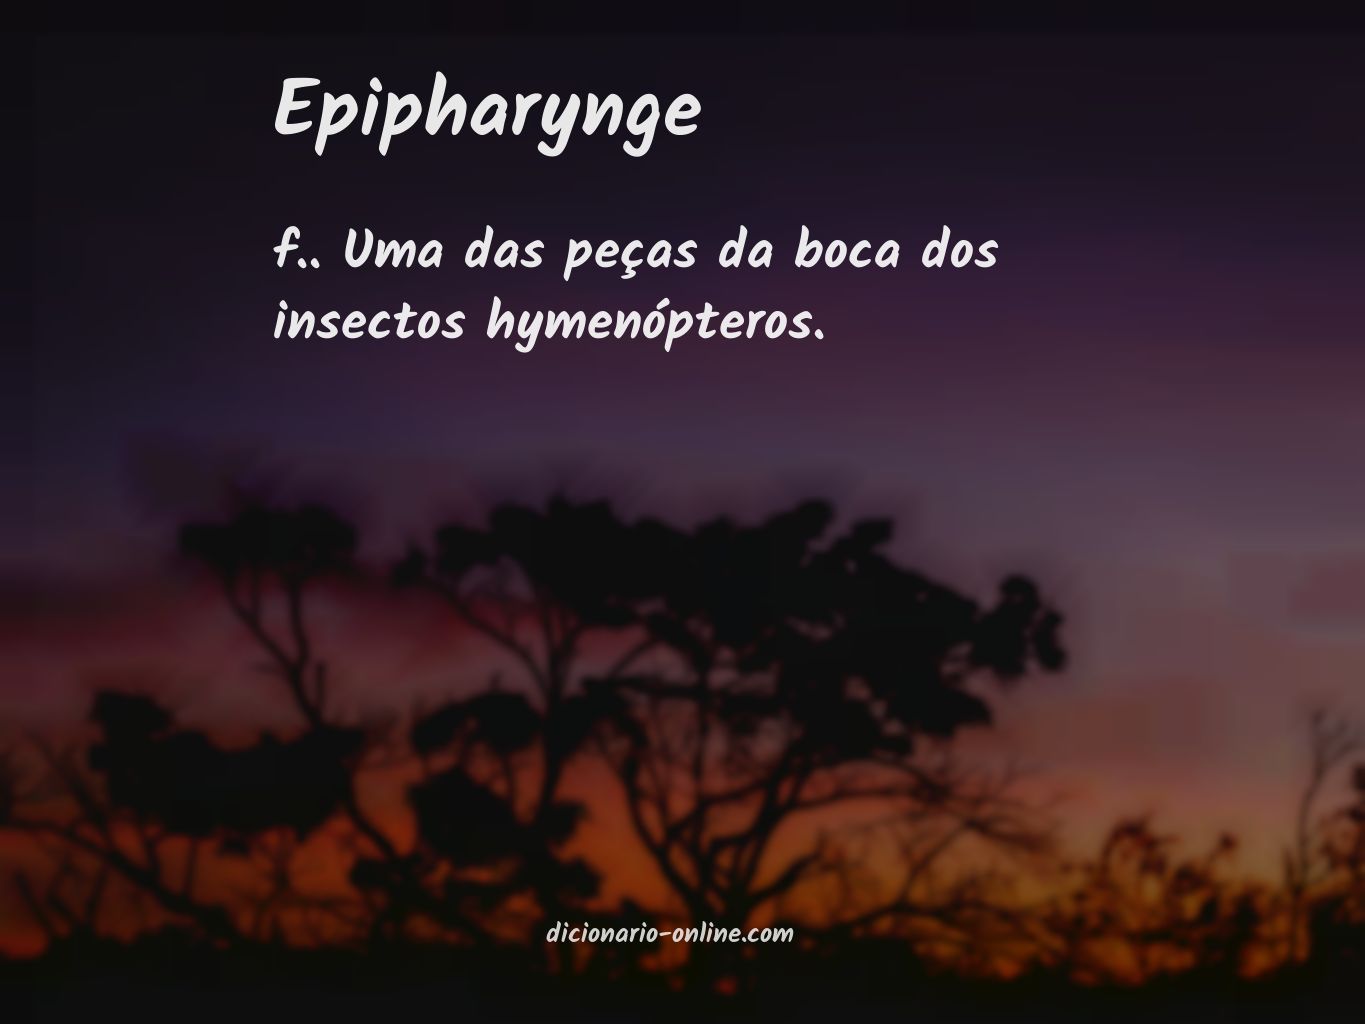 Significado de epipharynge